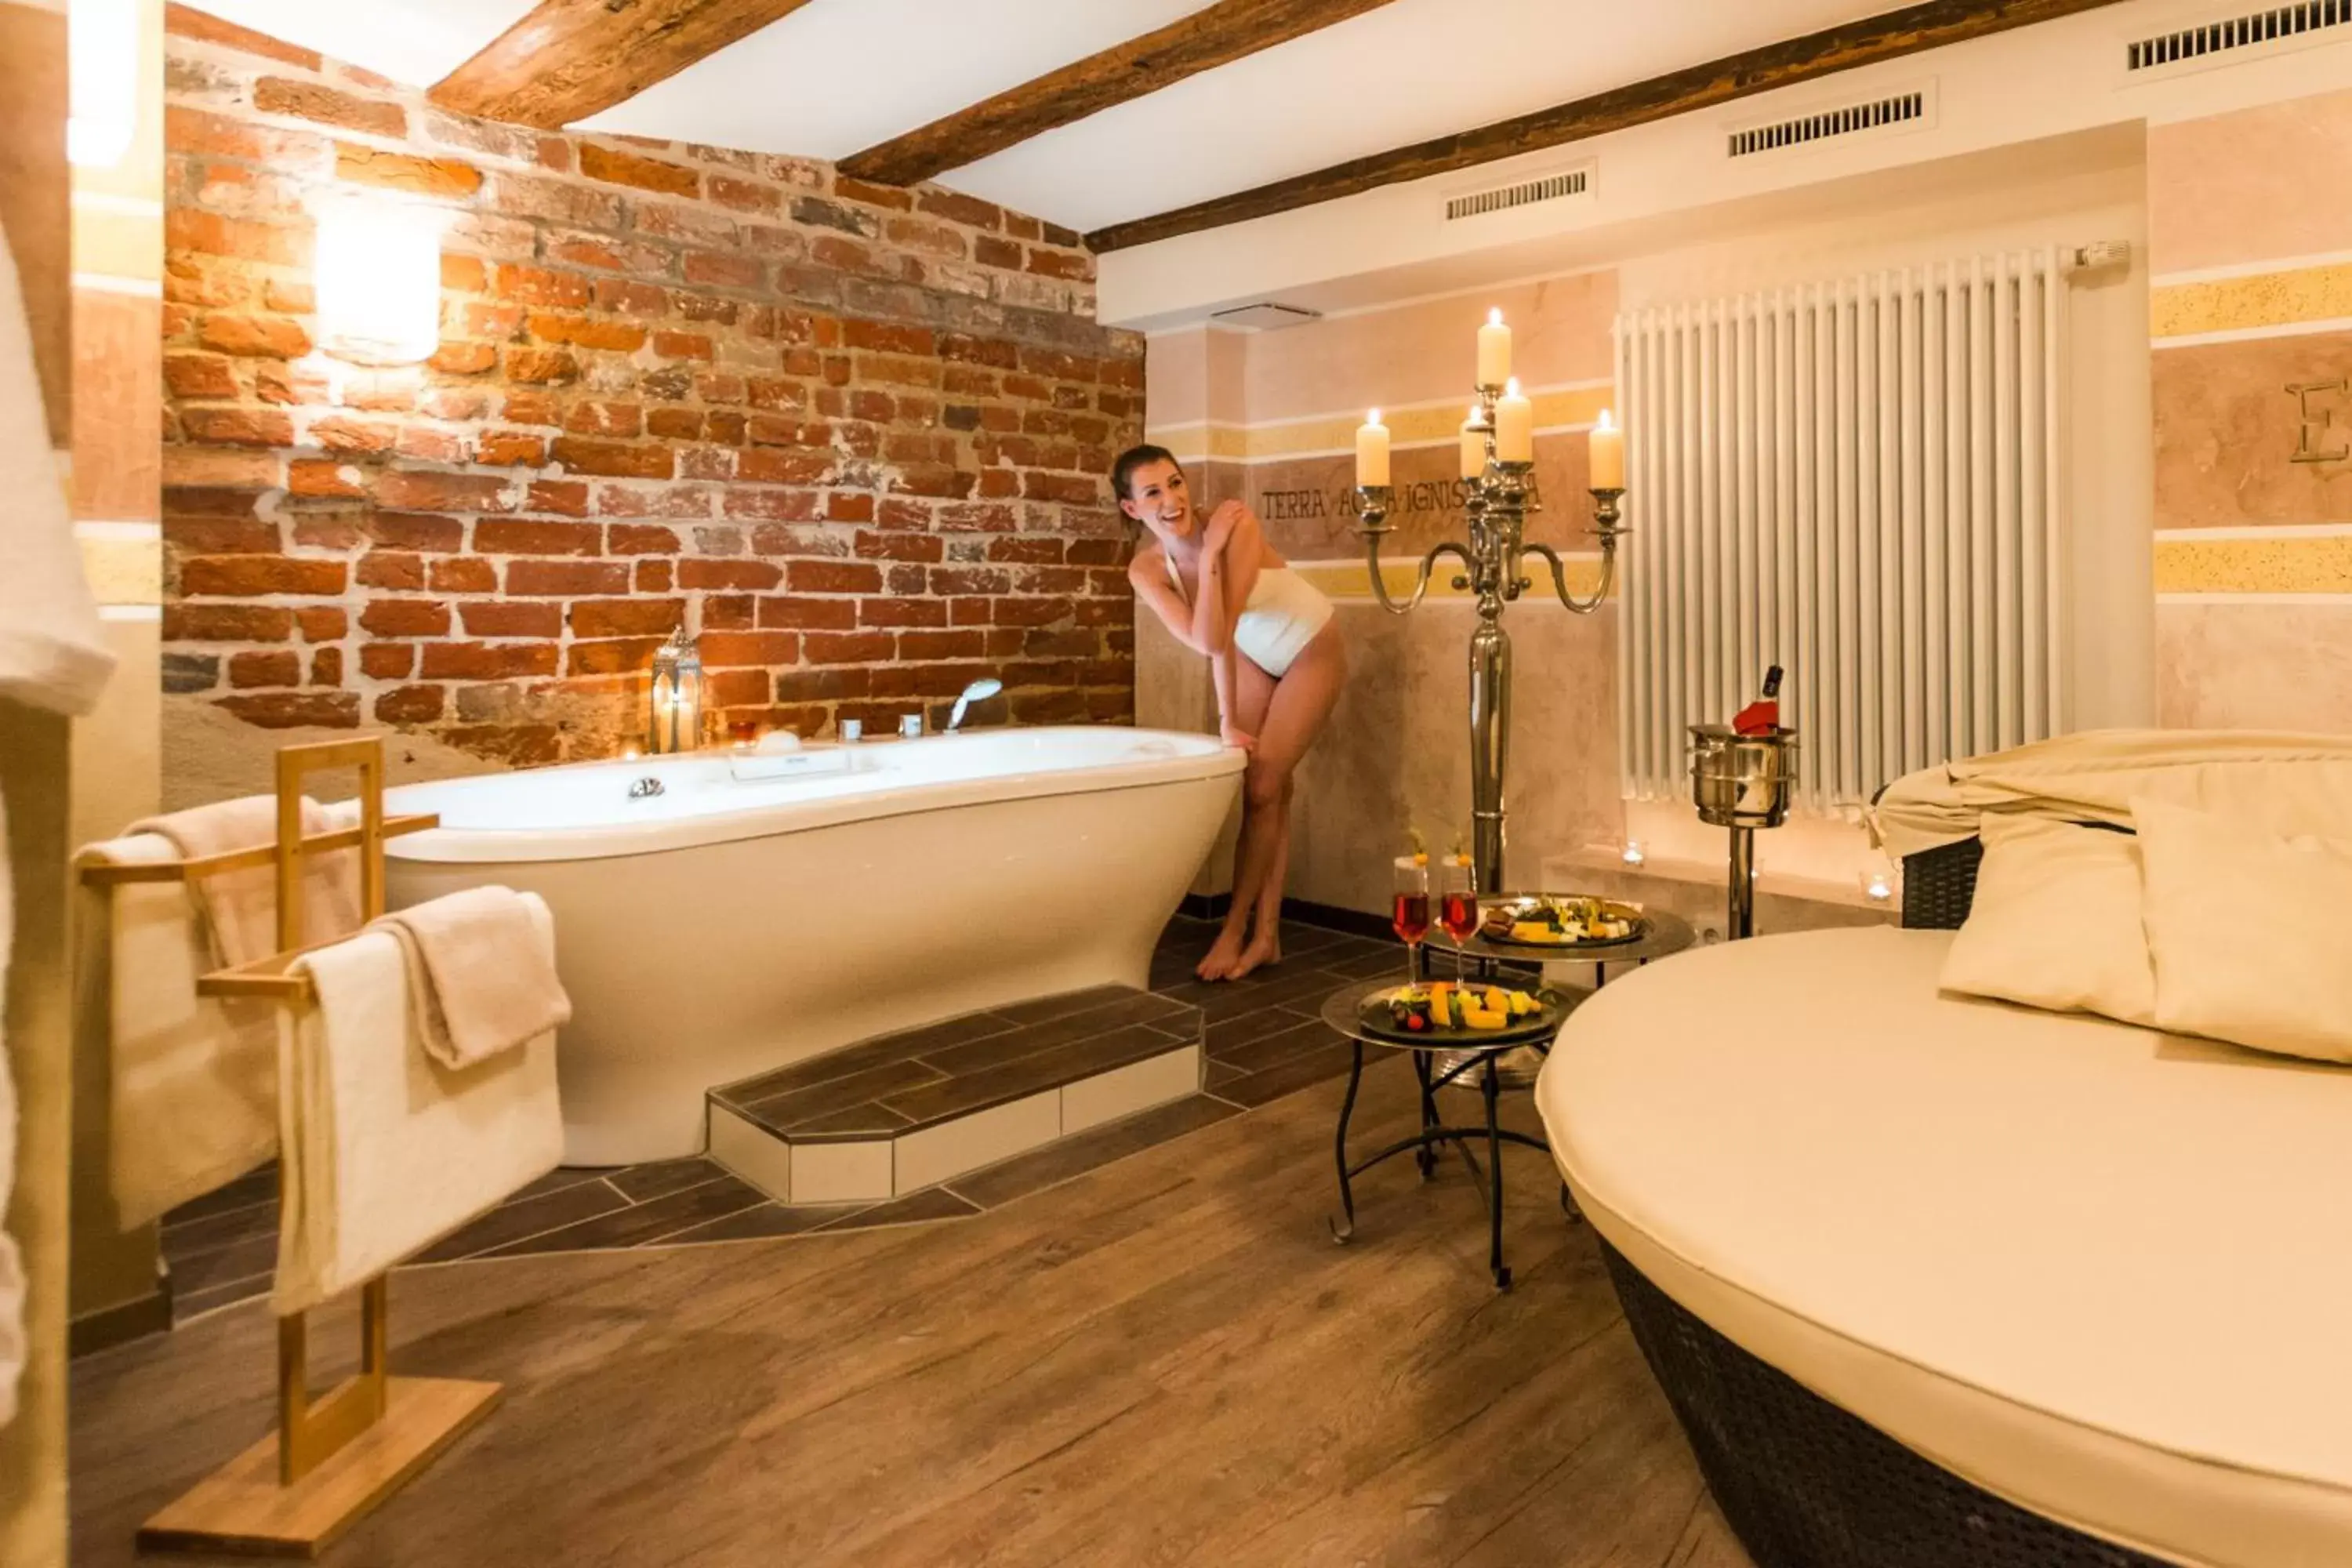 Spa and wellness centre/facilities, Bathroom in Romantik Hotel Scheelehof Stralsund